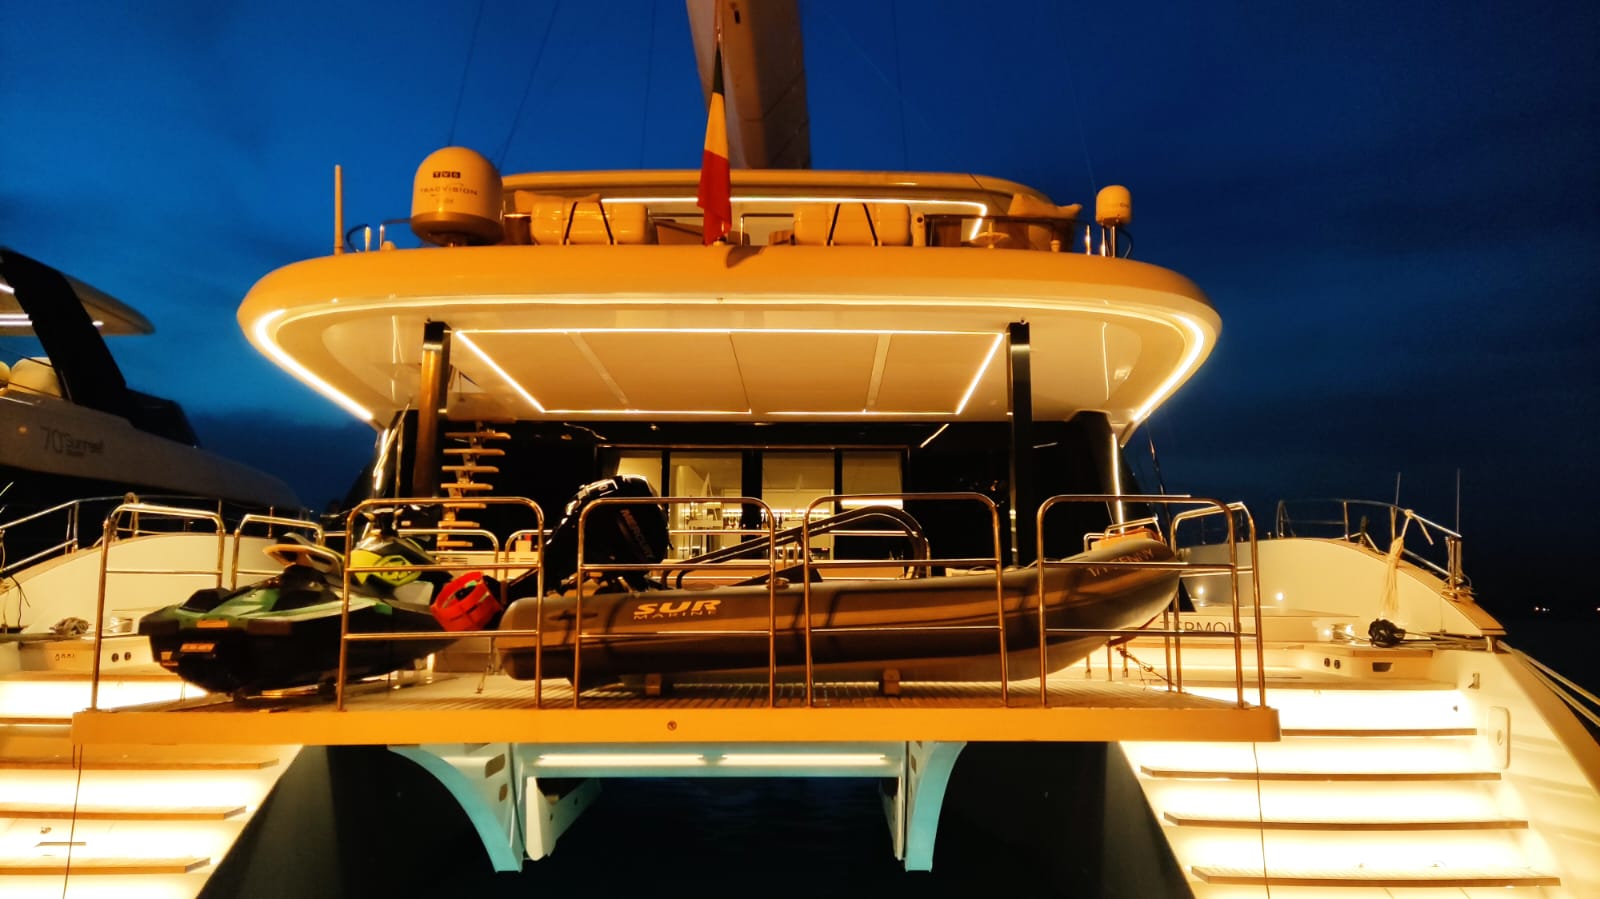 Σκάφη mediterranean yacht show Ναύπλιο προετοιμασίες (15)